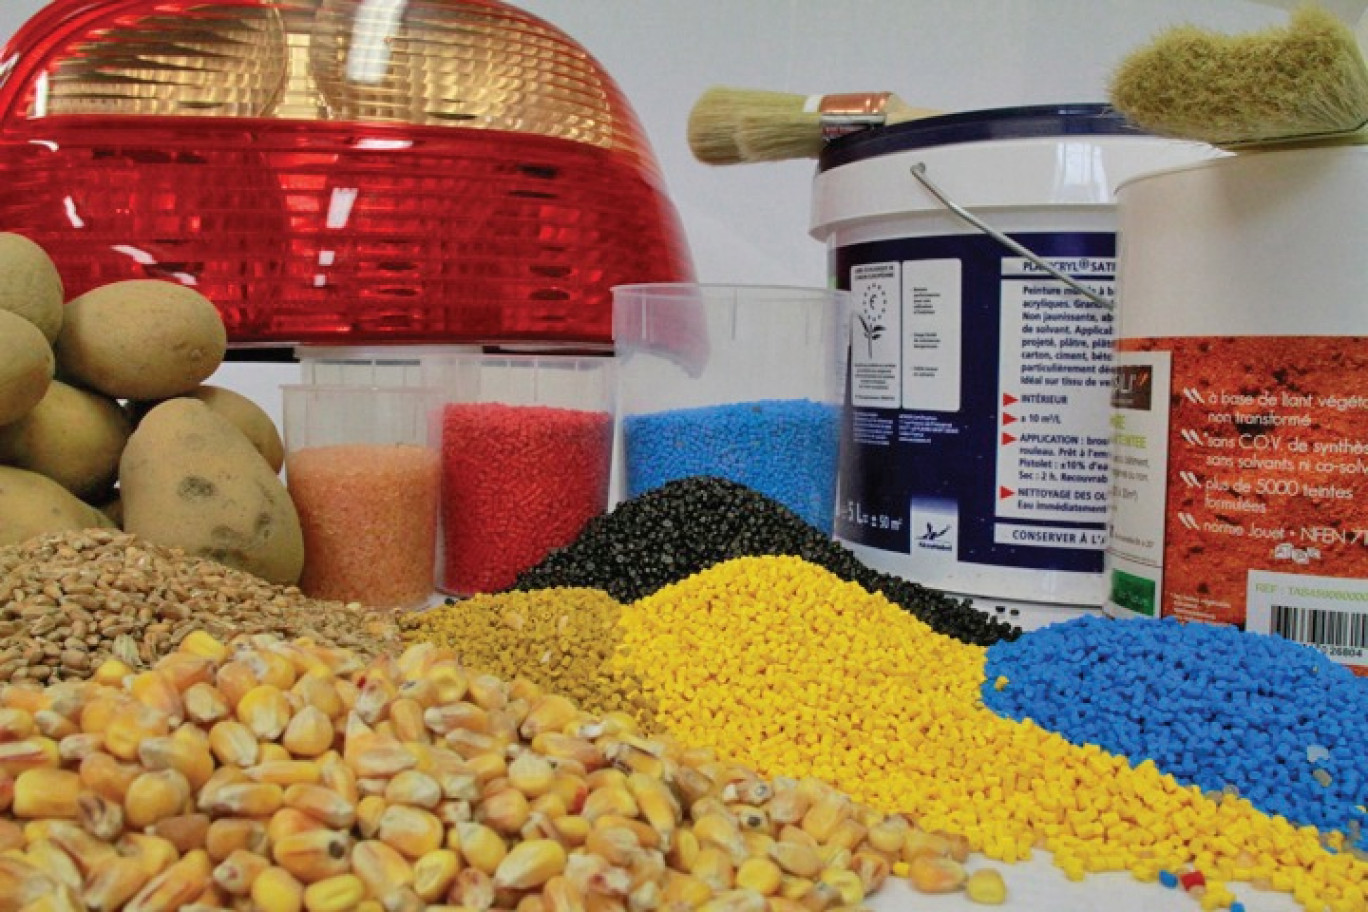 L’Ifmas va permettre demain de fabriquer des plastiques et peintures à partir de céréales et pommes de terre.